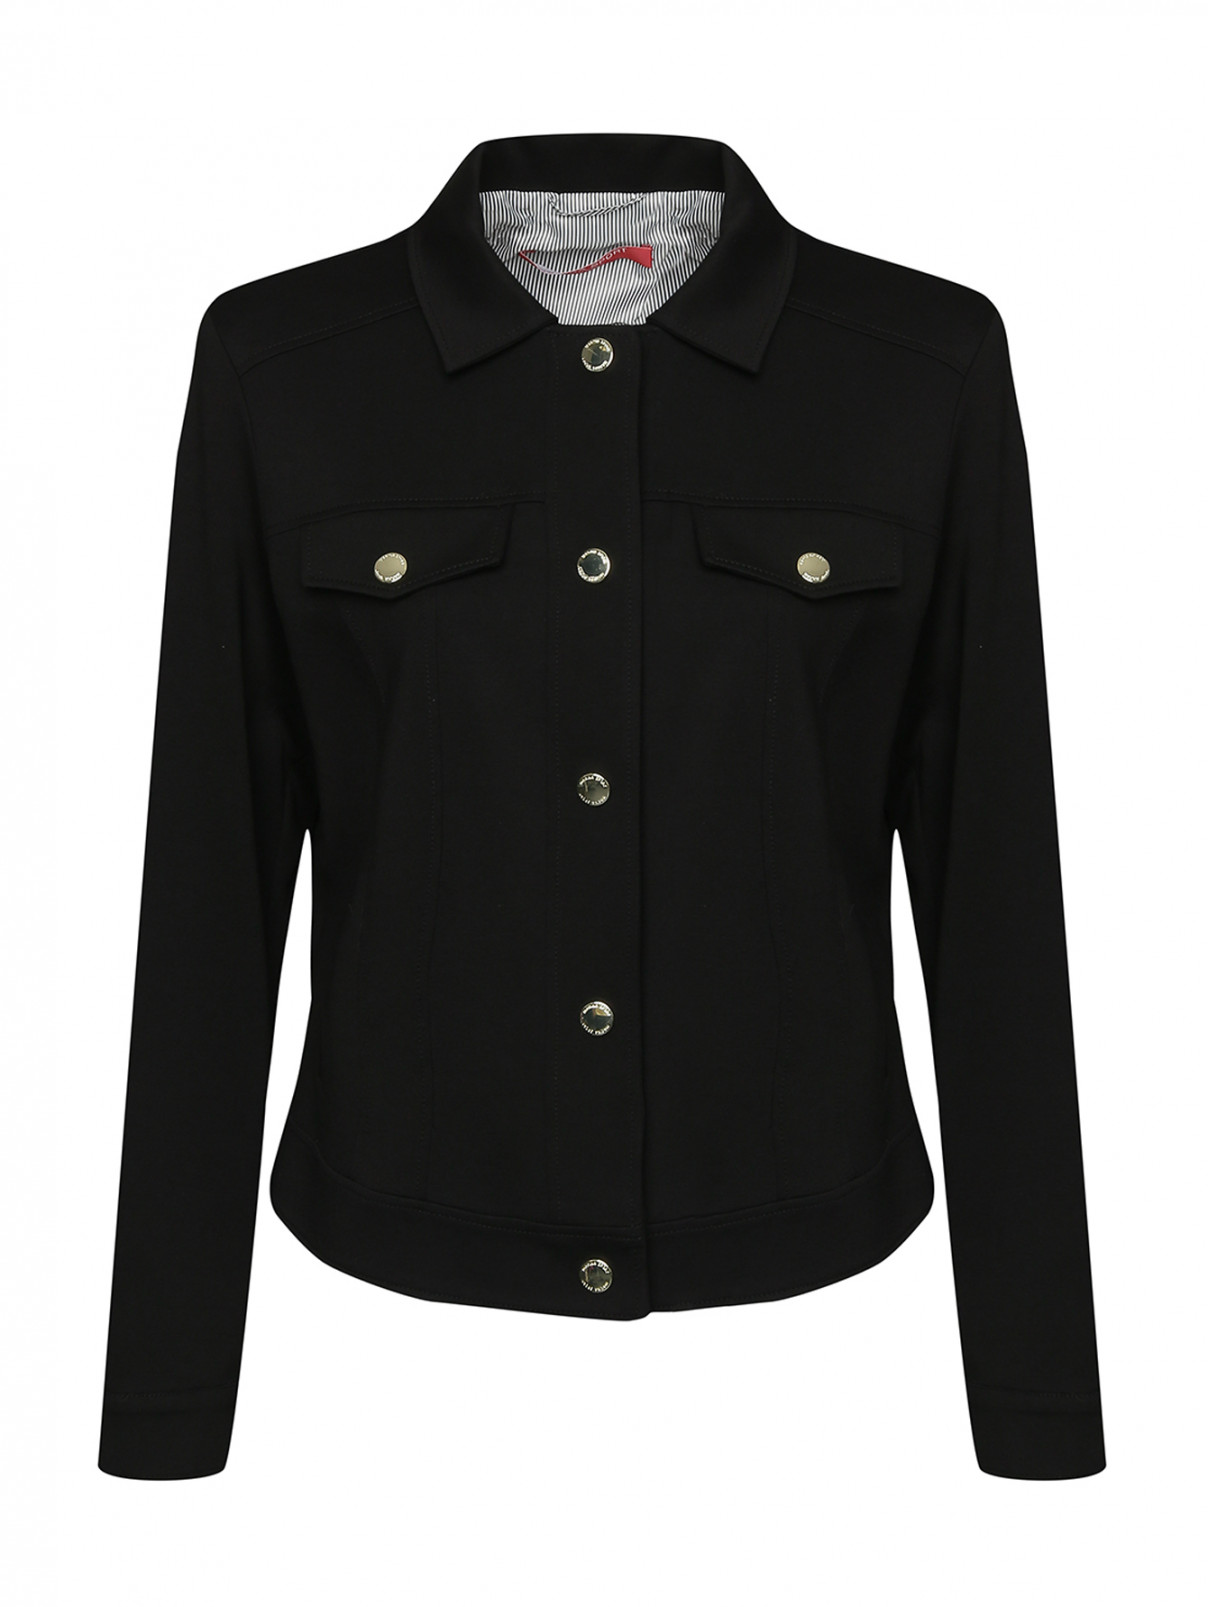 Куртка трикотажная с пуговицами Marina Rinaldi  –  Общий вид  – Цвет:  Черный